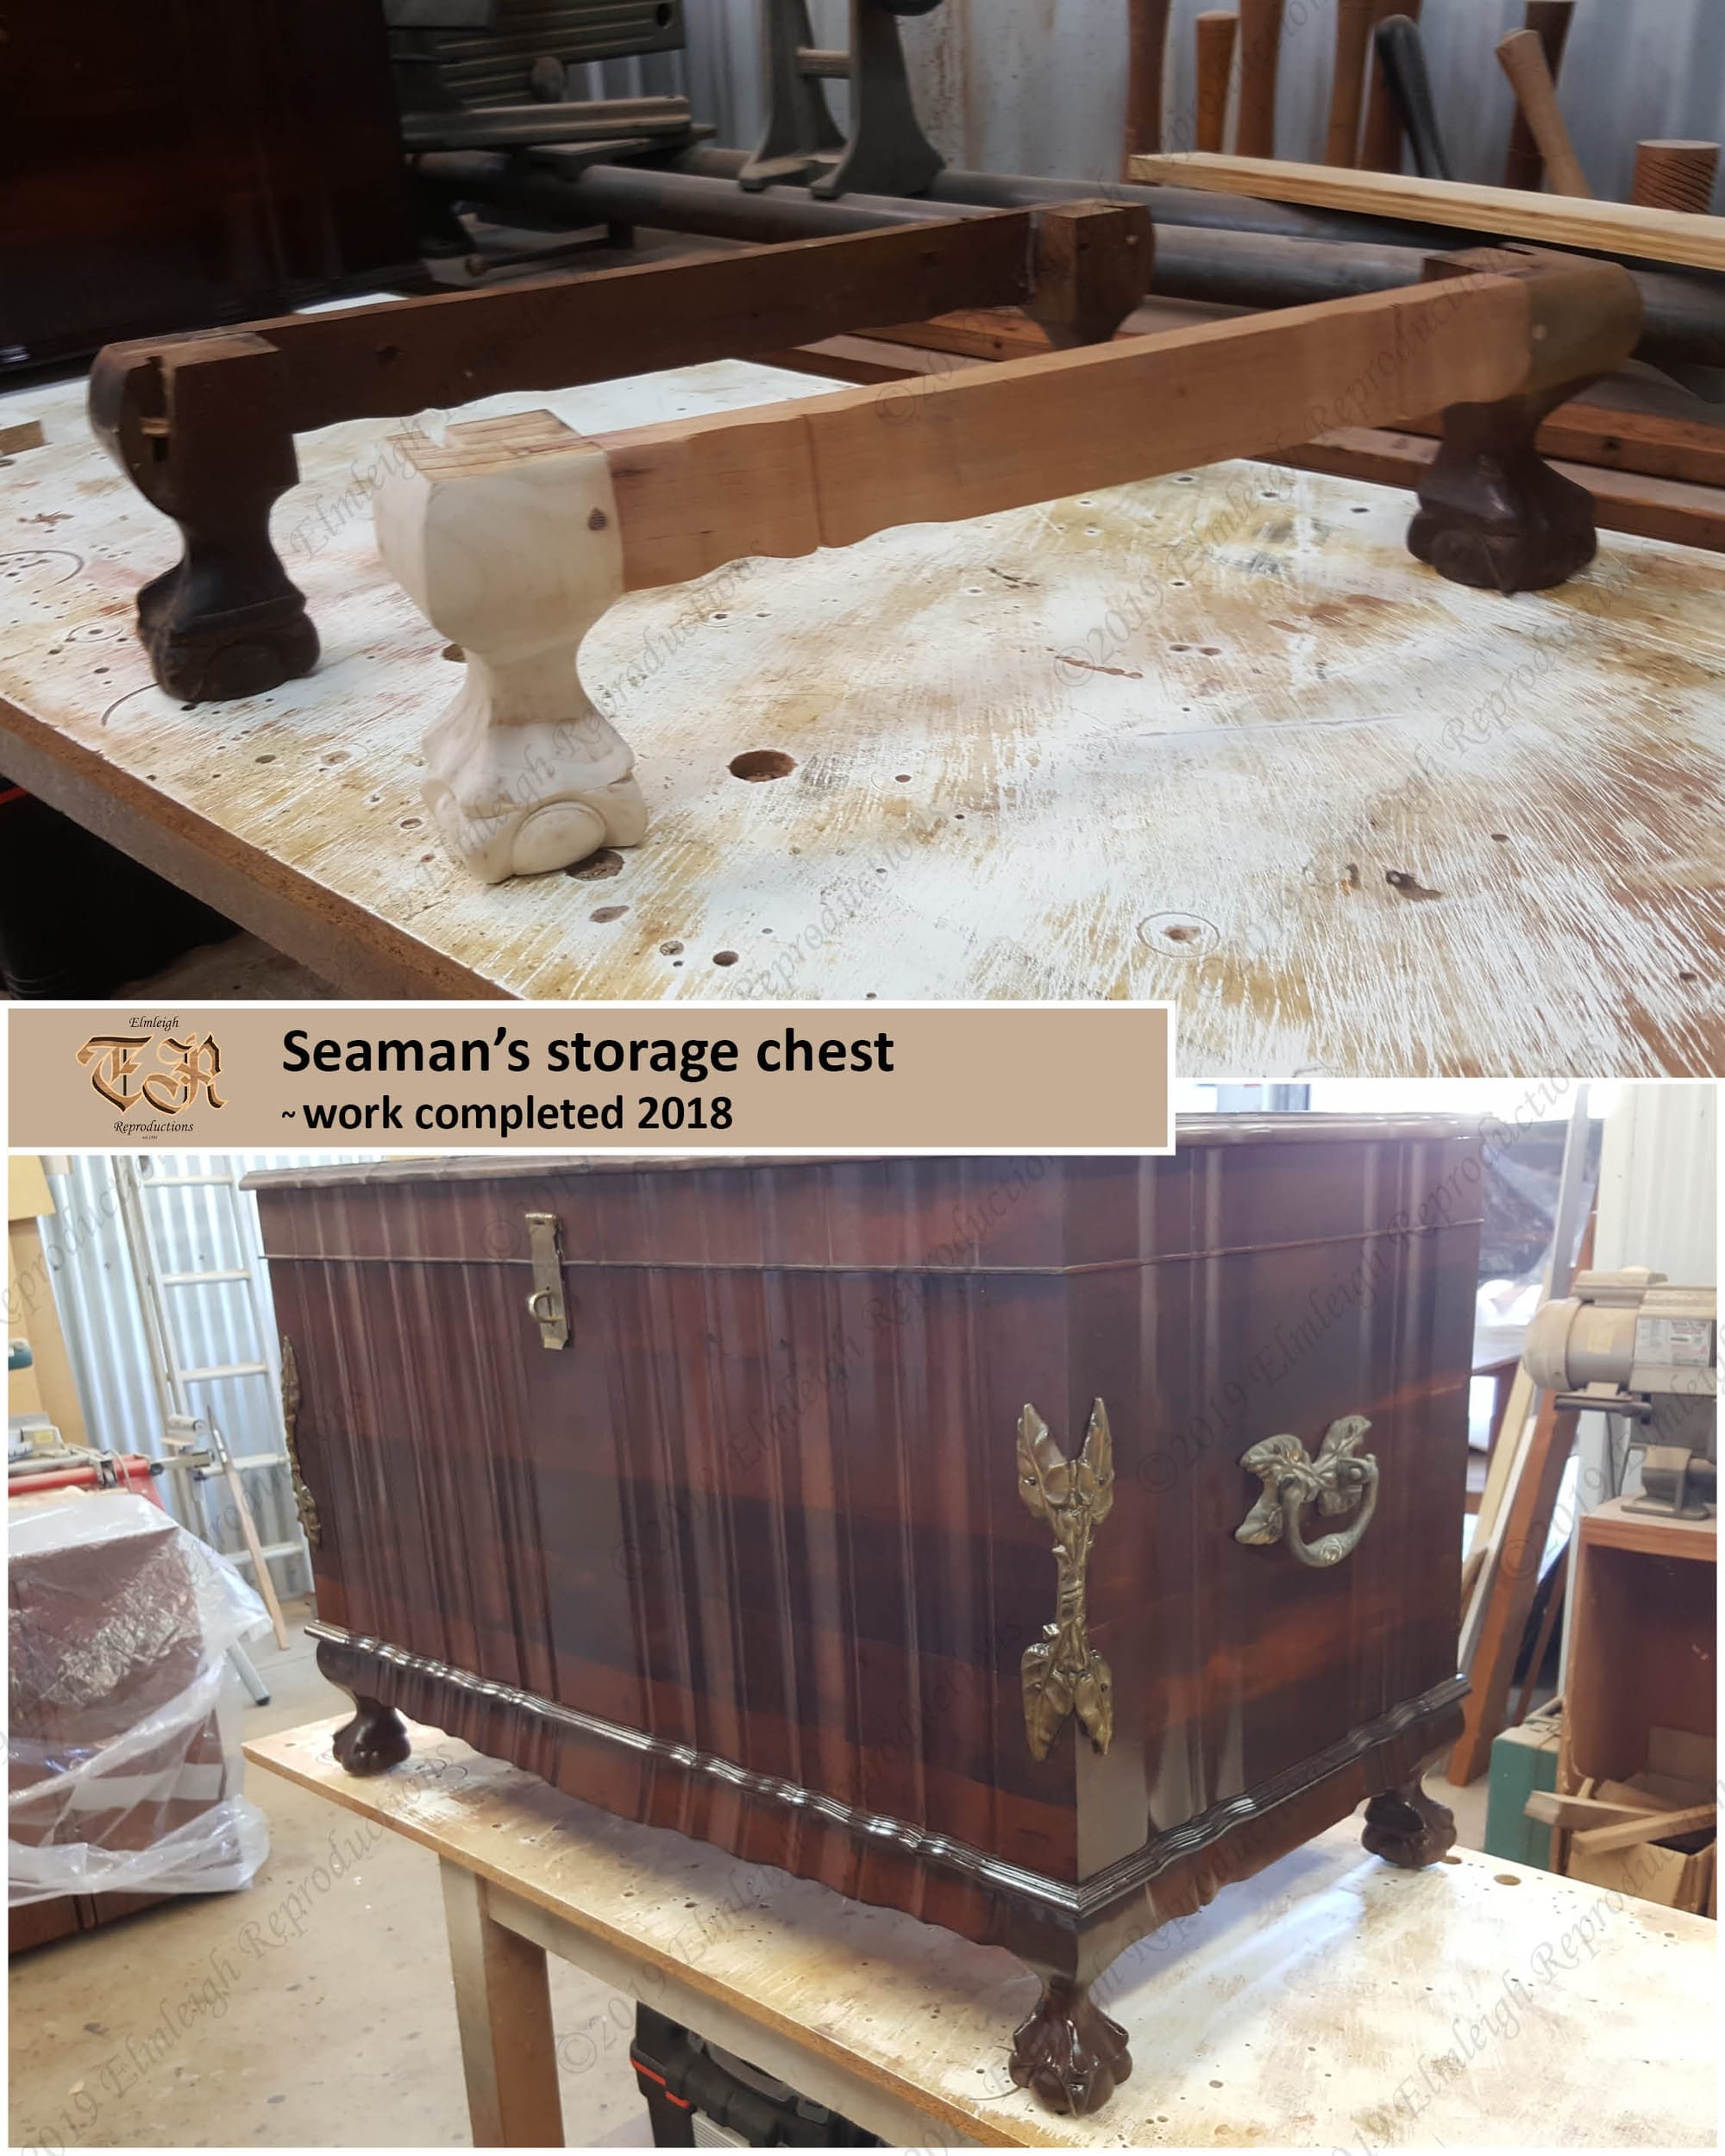 Seaman's storage chest